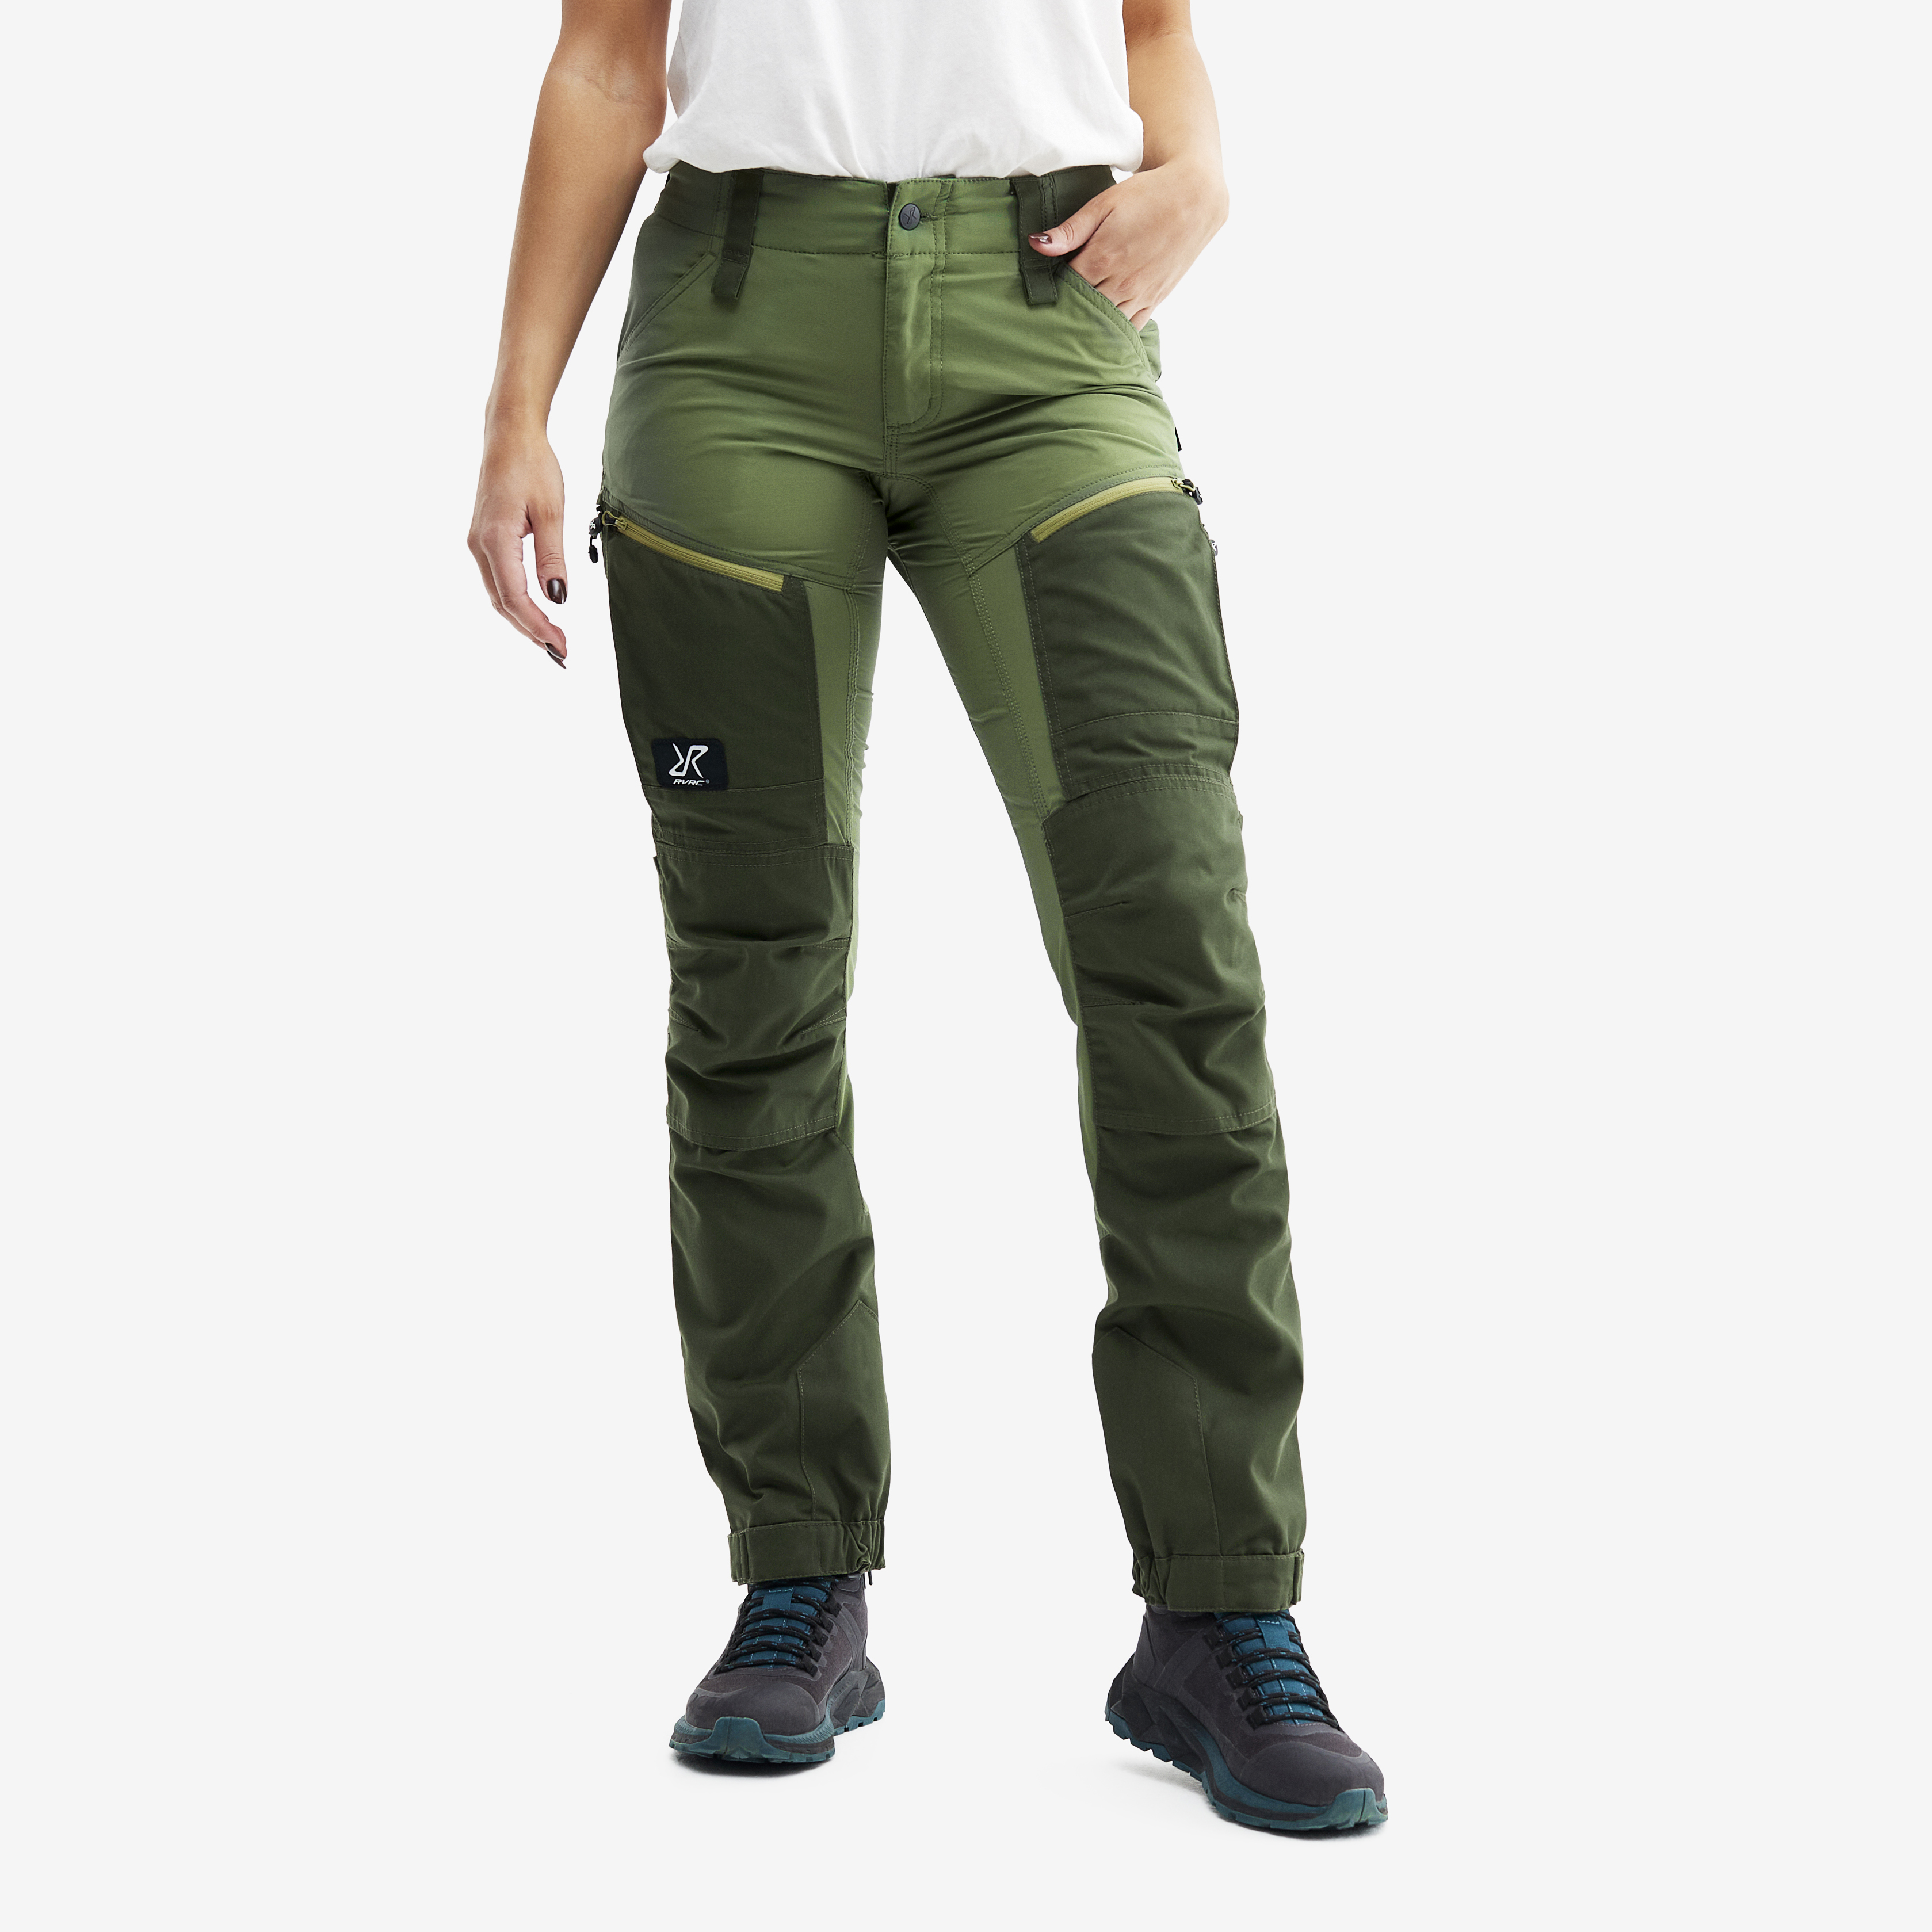 RVRC GP Pro spodnie trekkingowe damskie zielony